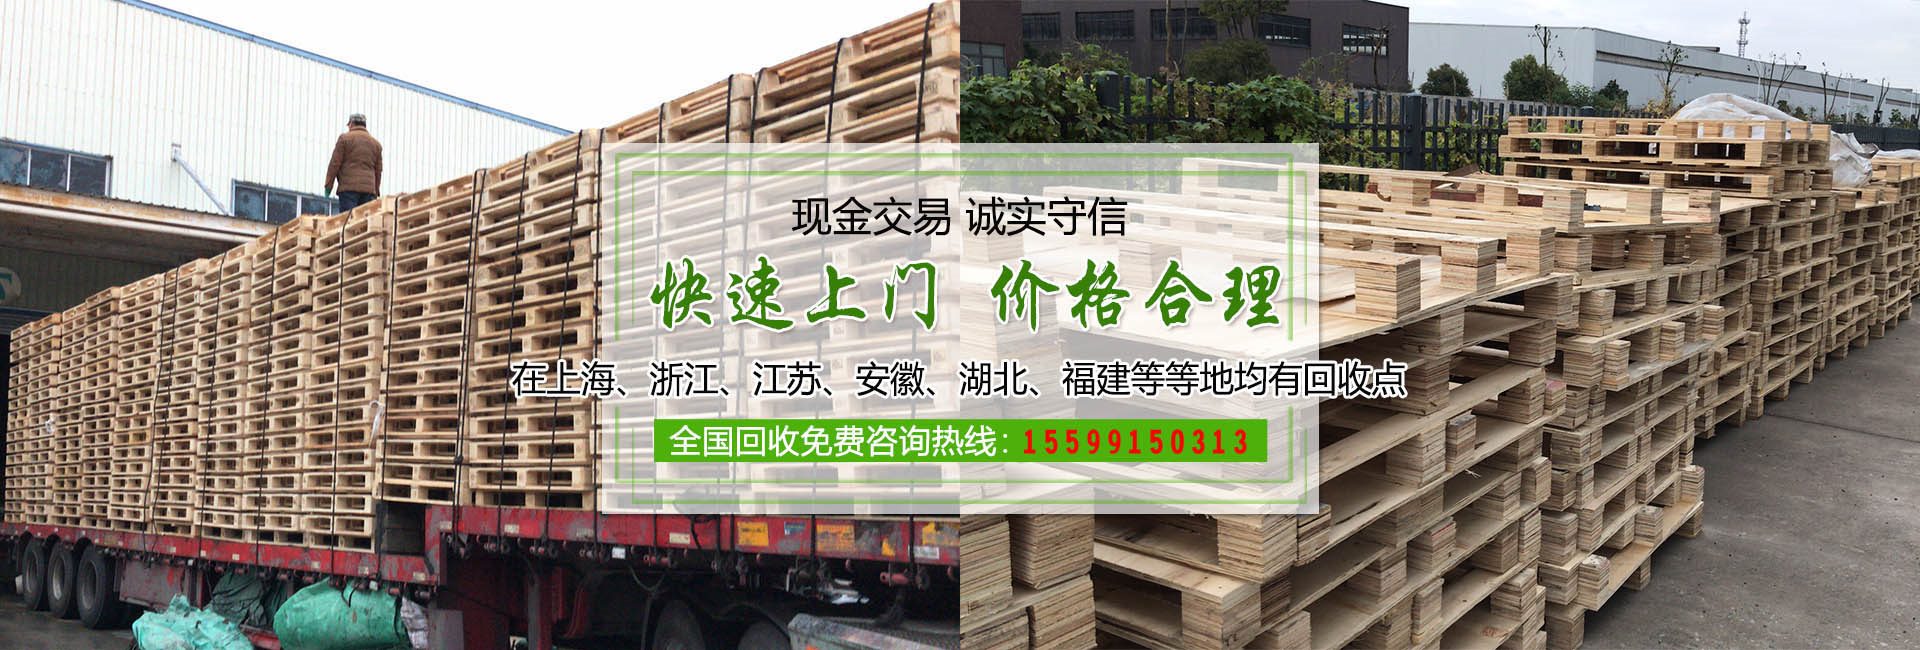 贵州应春木业有限公司